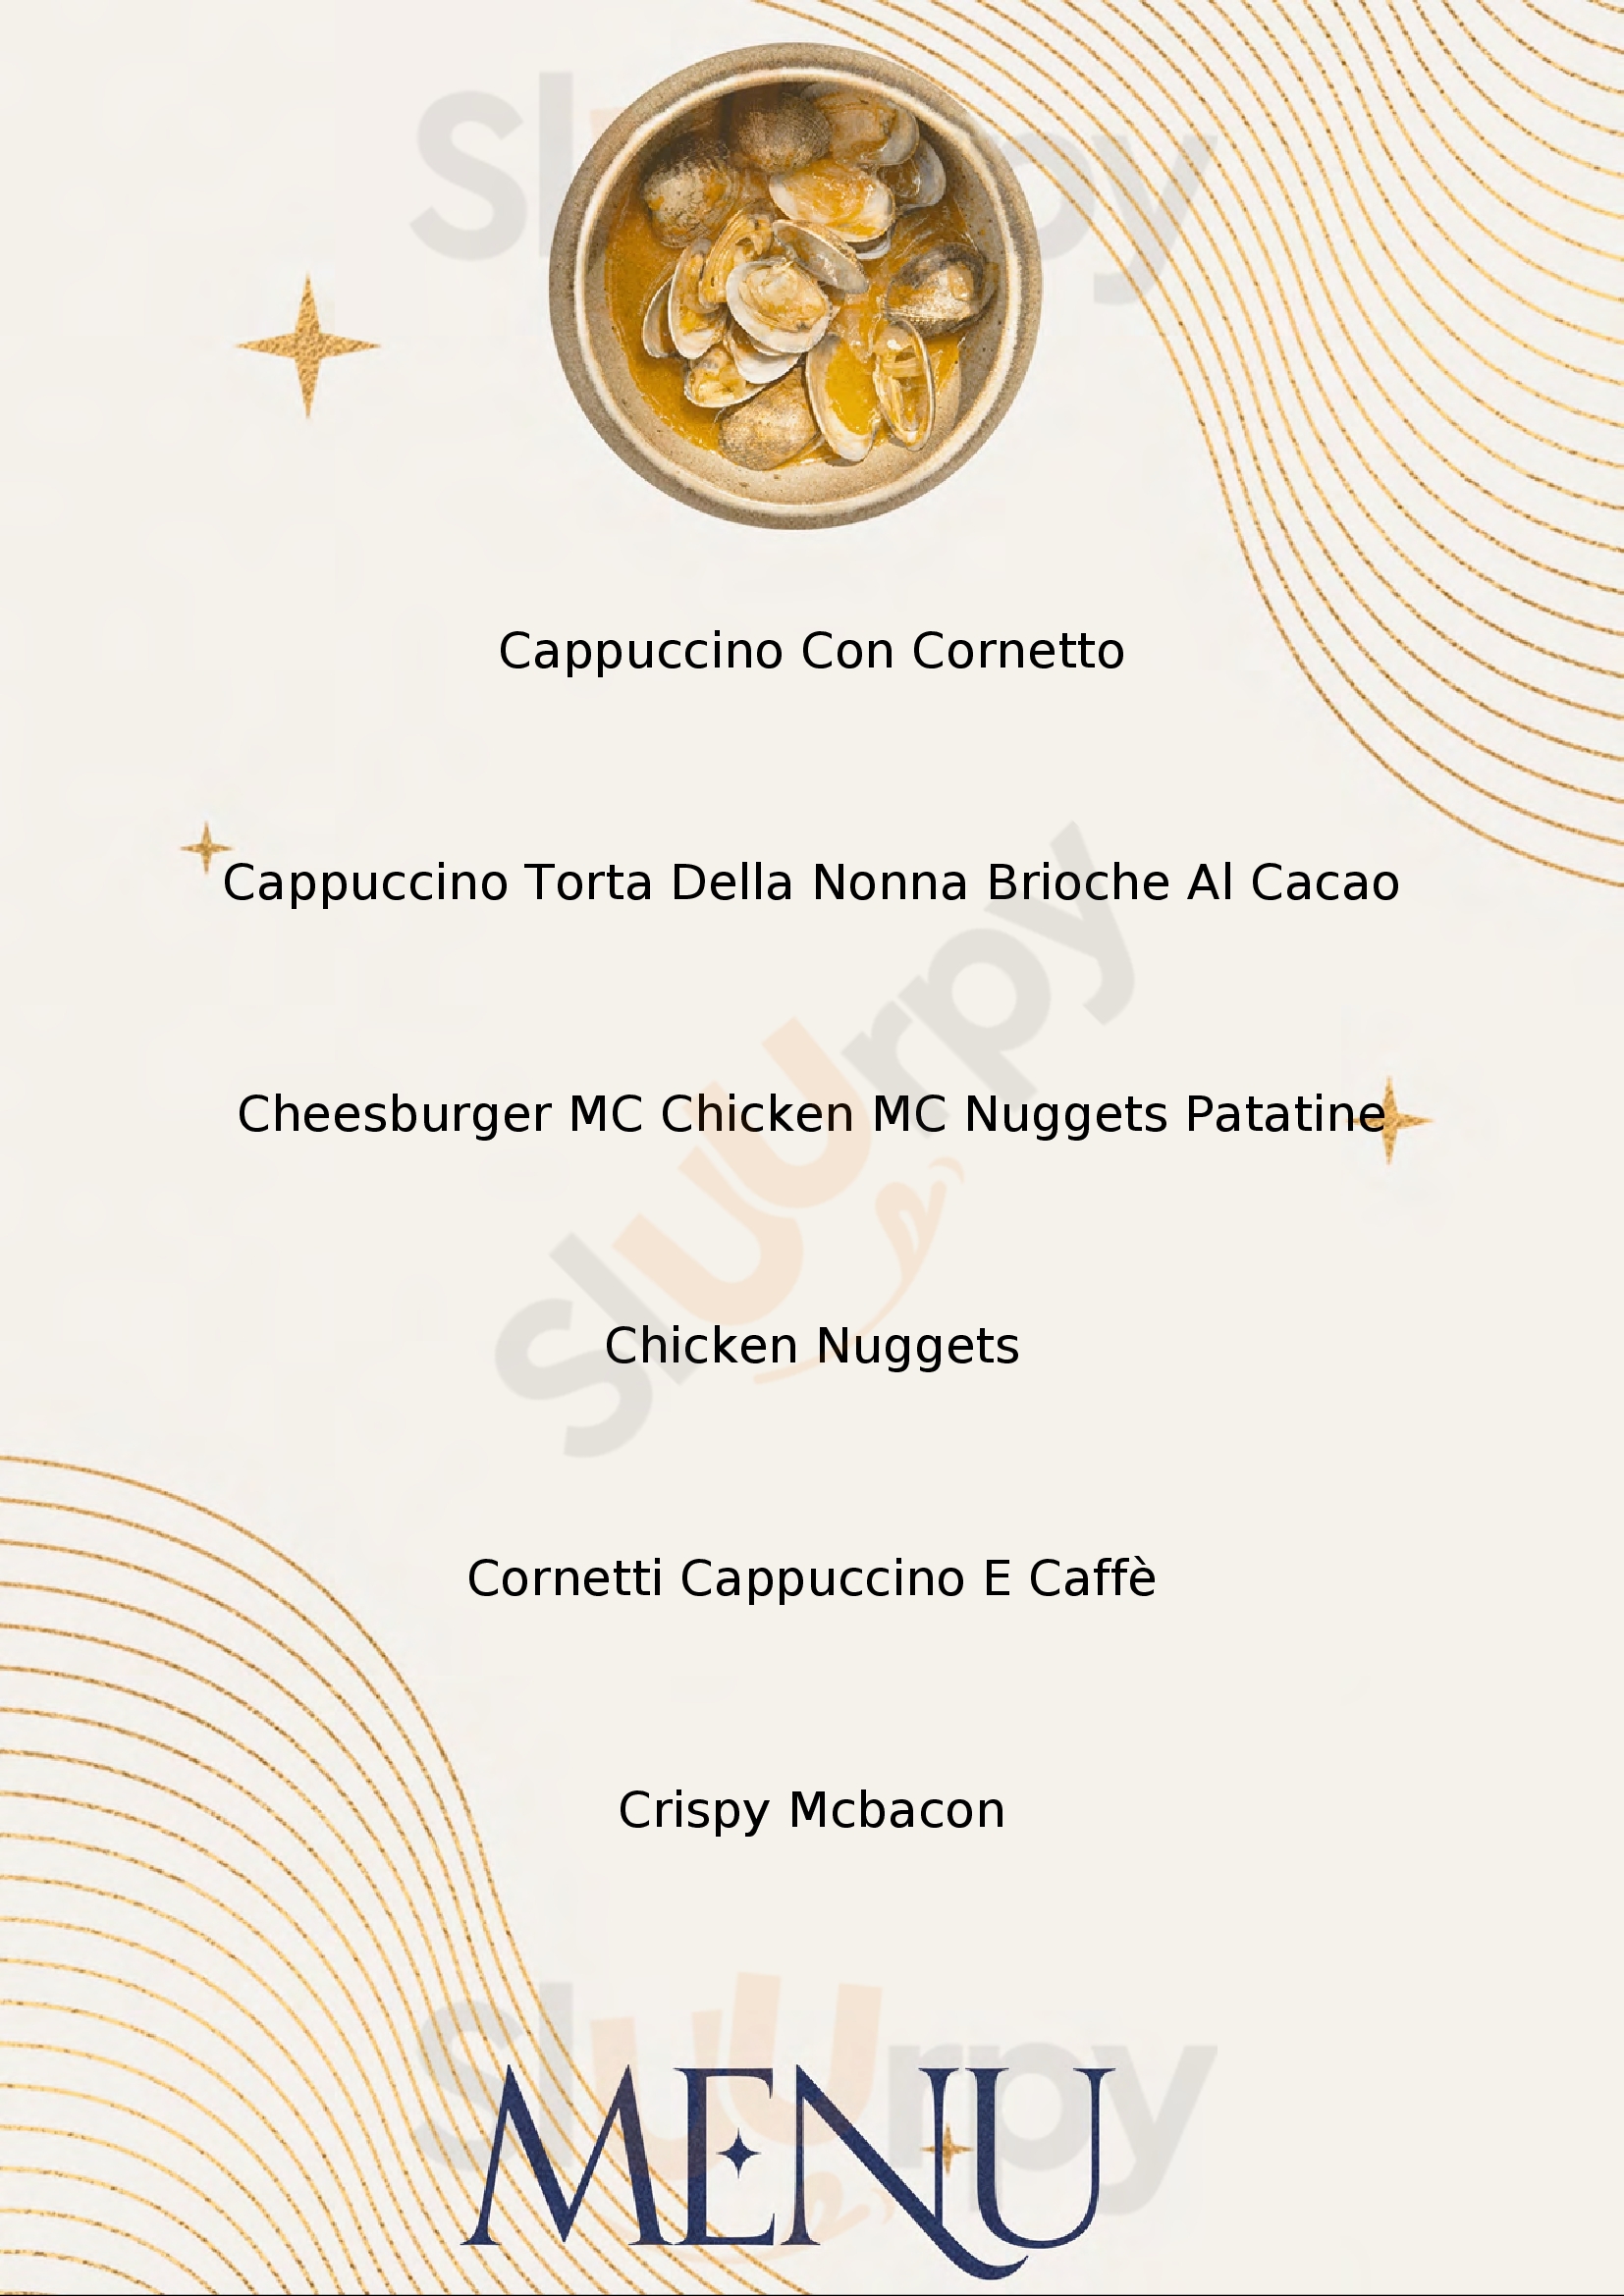 McDonald's - McCafe' Ravenna menù 1 pagina